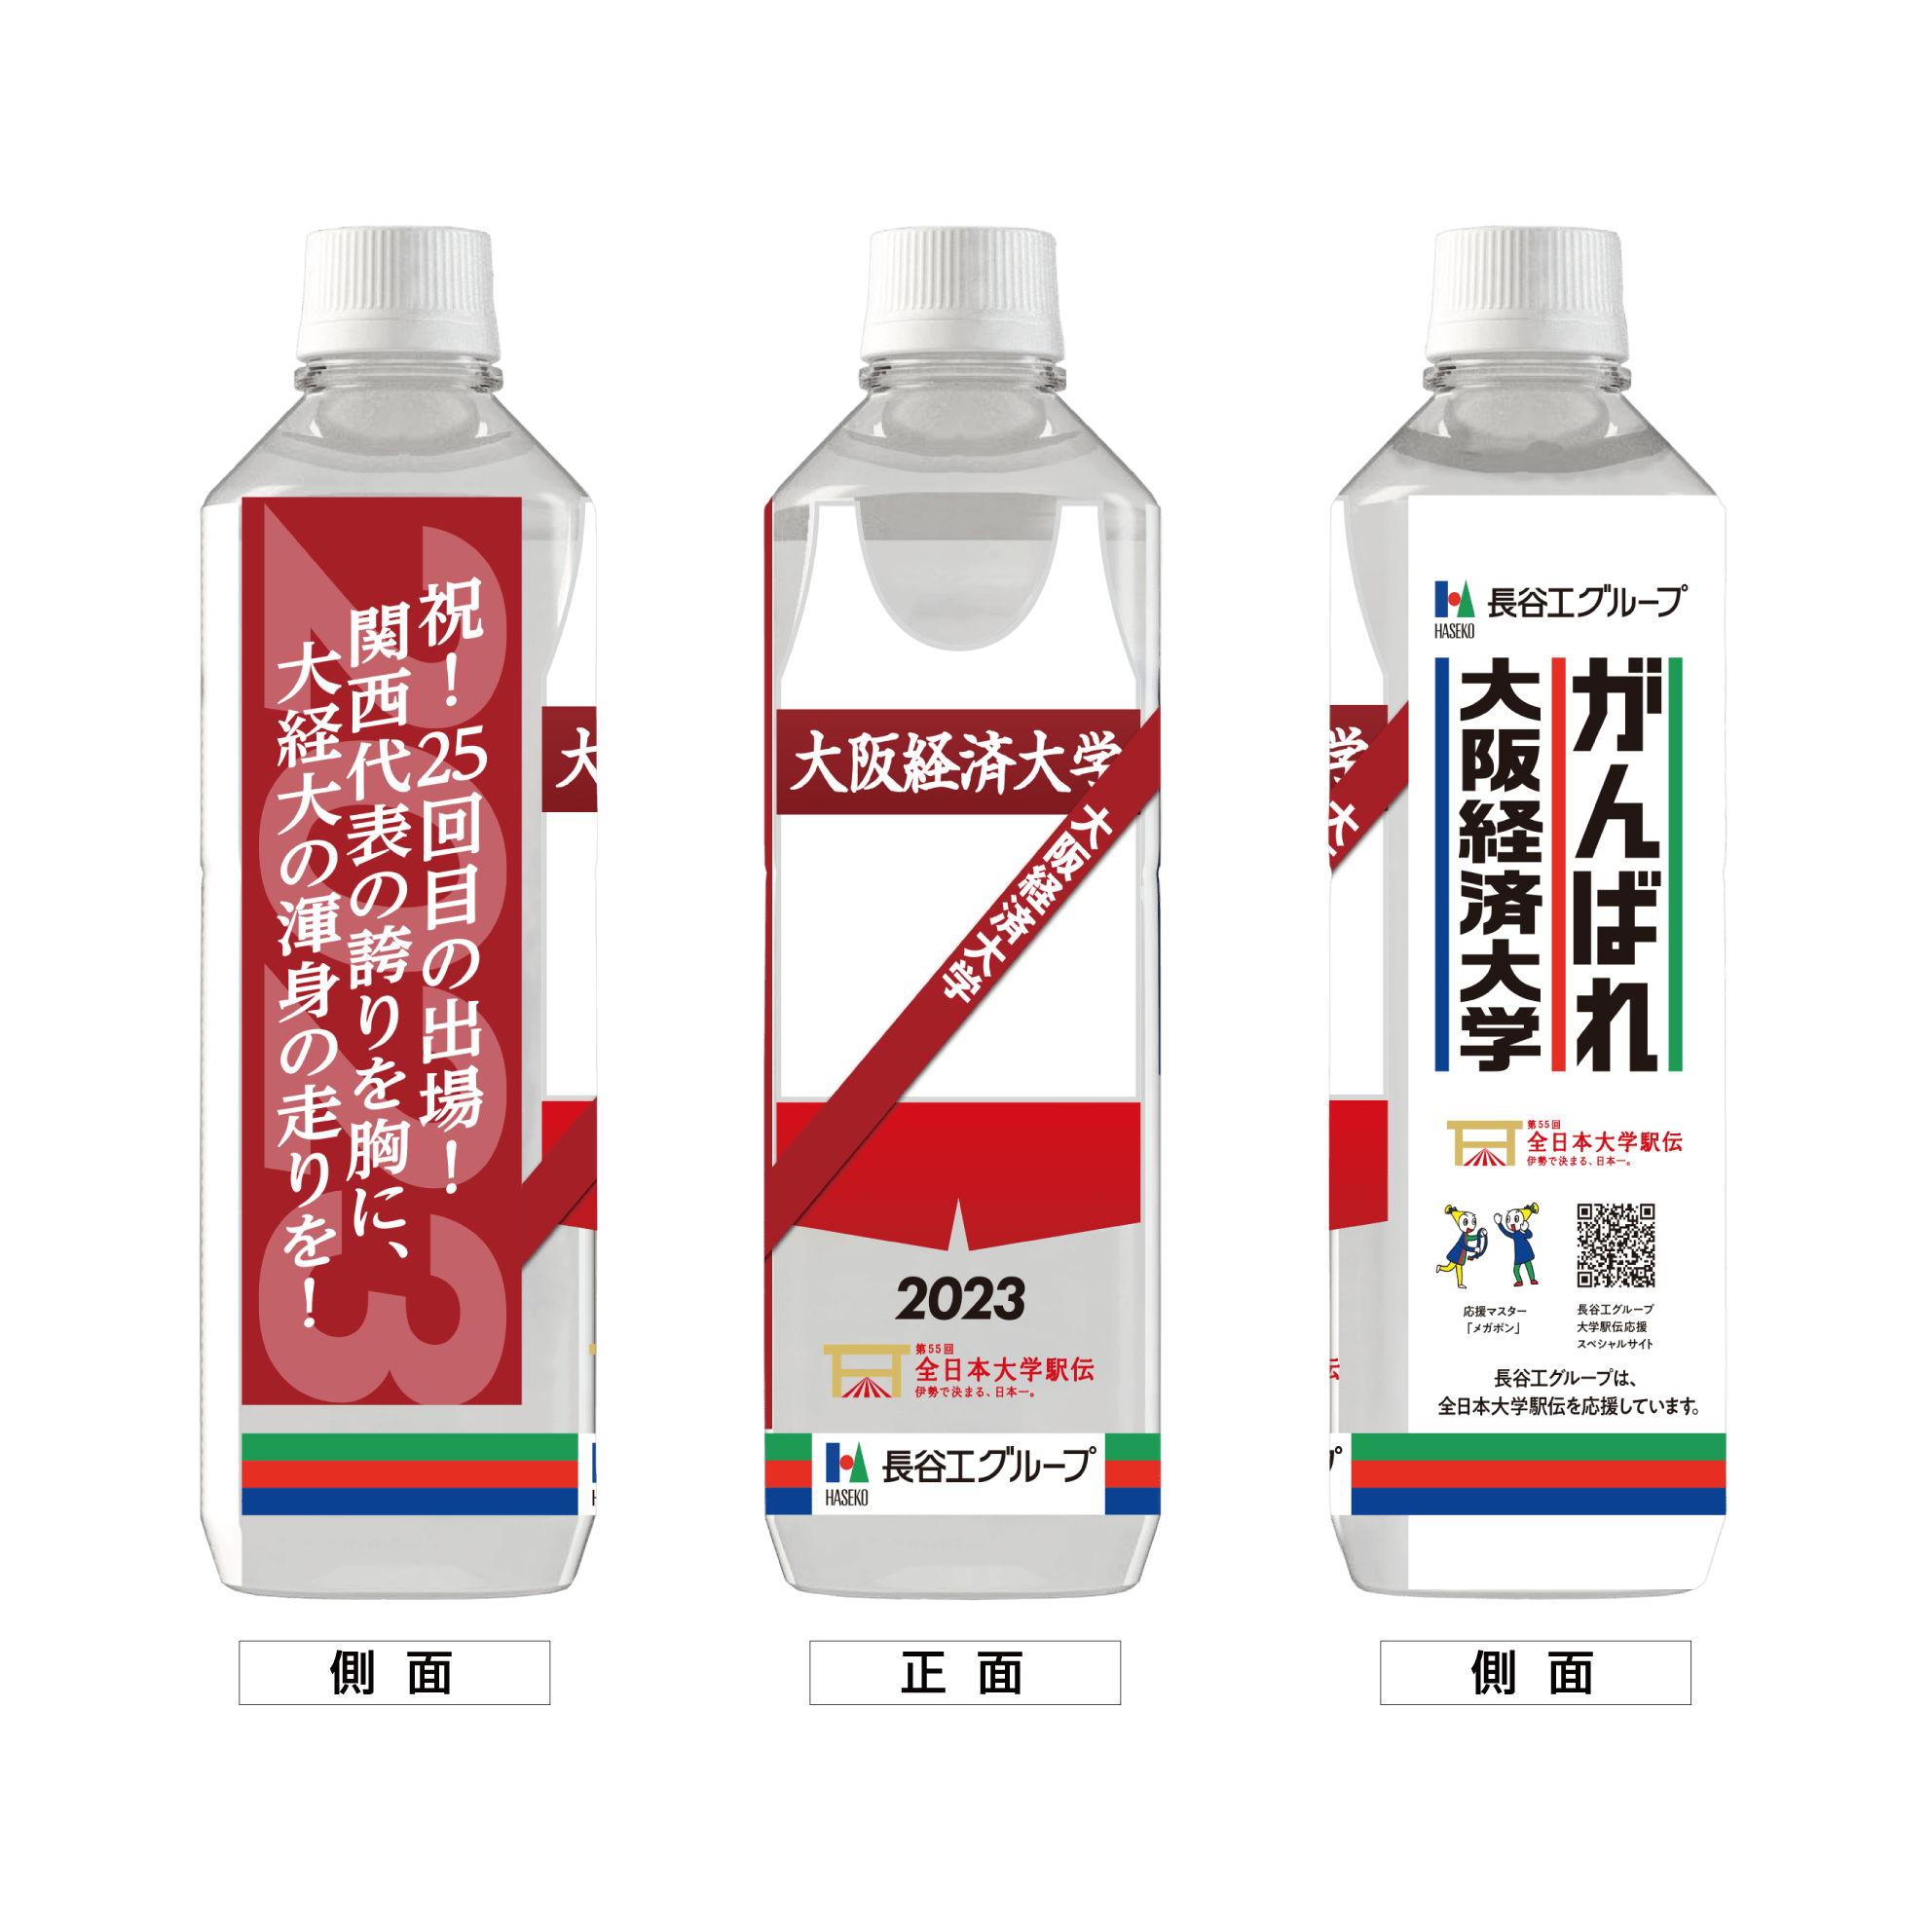 大阪経済大学 ボトルデザイン